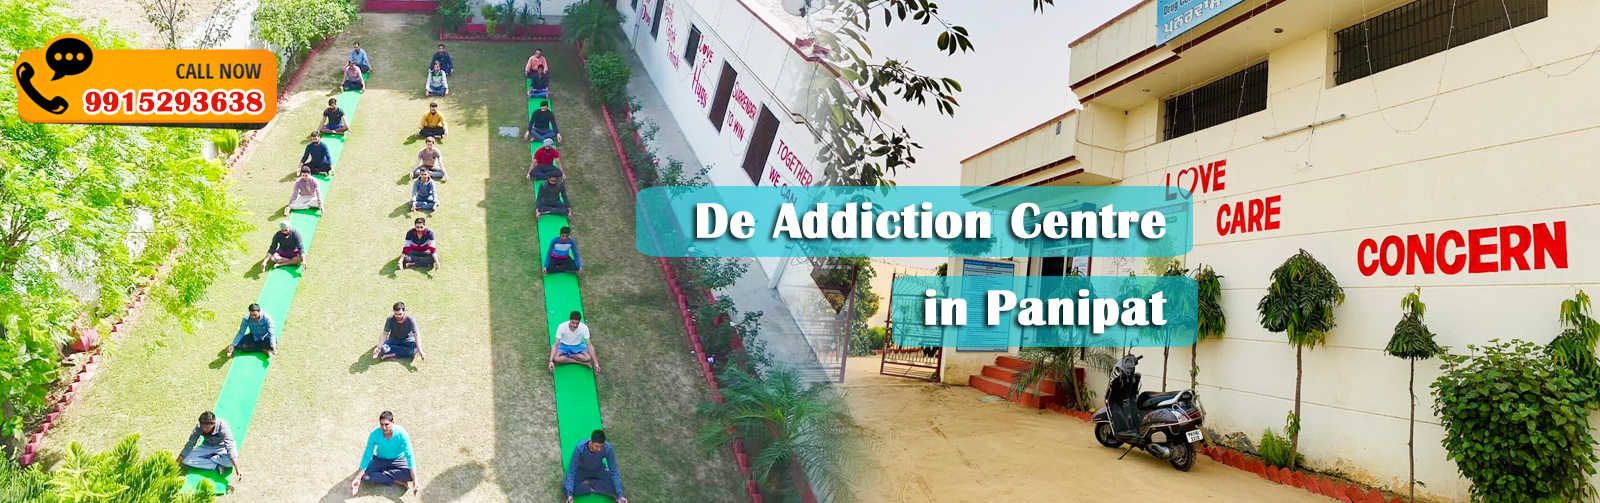 De Addiction Centre in Panipat